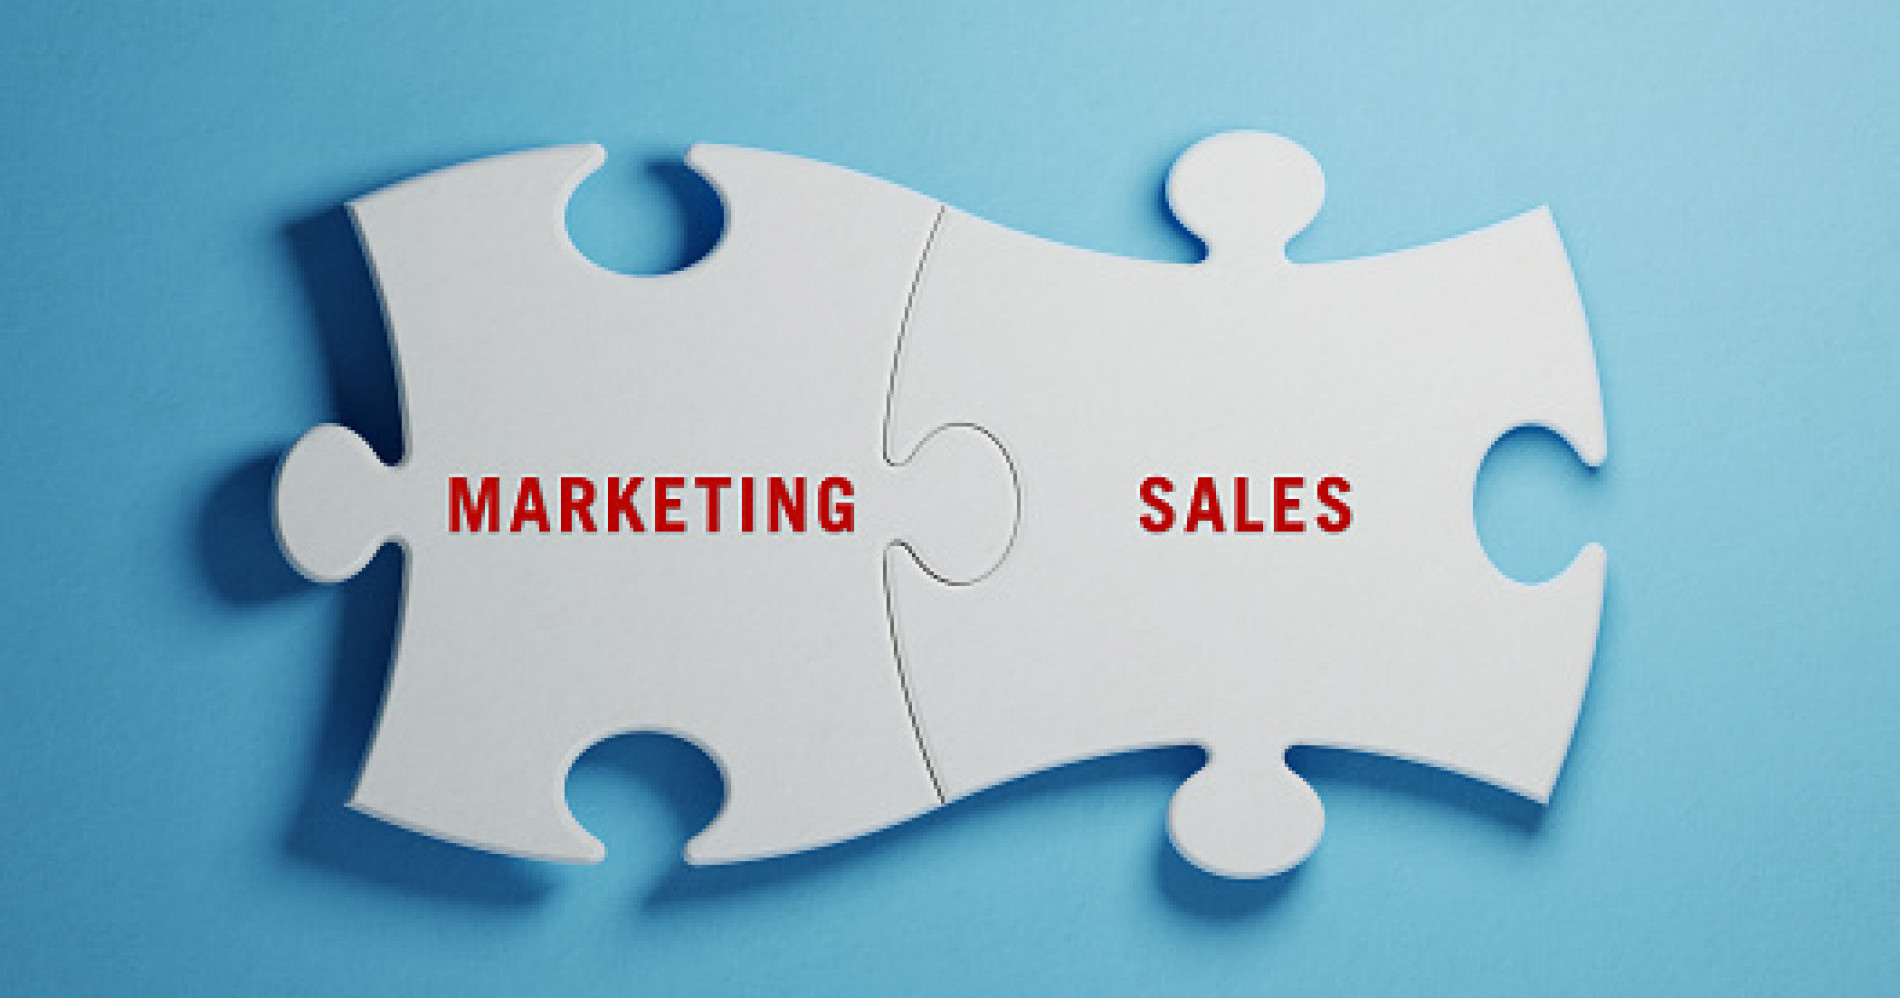 Pemasaran dan Penjualan memang berbeda, namun saling melengkapi (Sumber Gambar: istock)